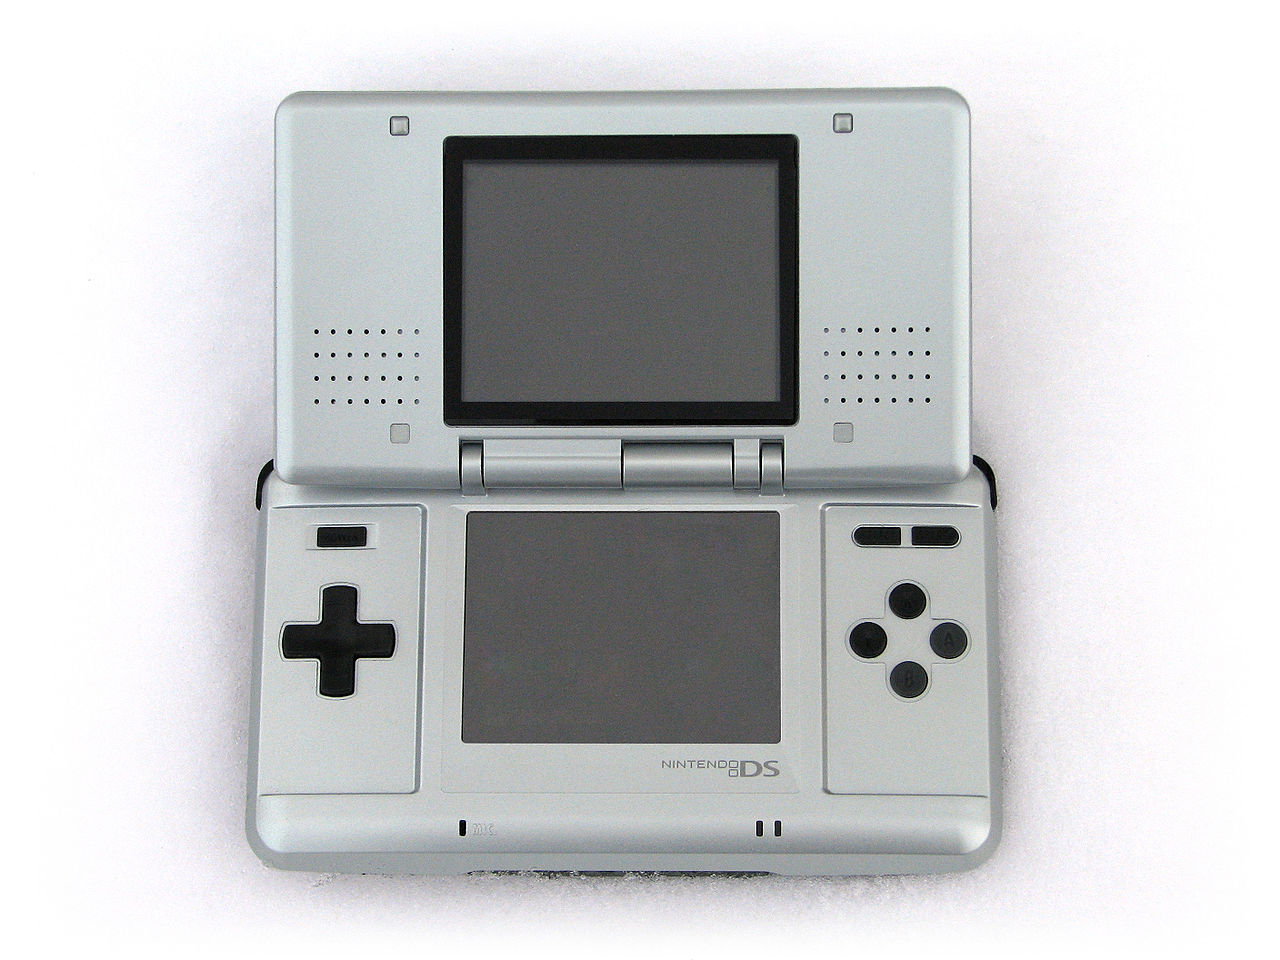 Nintendo je umirovio Game Boy brand, s iznimnom Micra, 2004. godine kada je predstavio DS. Nintendo DS je bila prava revolucija. Imao je dva ekrana, jedan kojih je bio touchscreen. Nudio je mogućnost igranja igara preko interneta, te još par dodatnih tipki za interakciju s igrom.